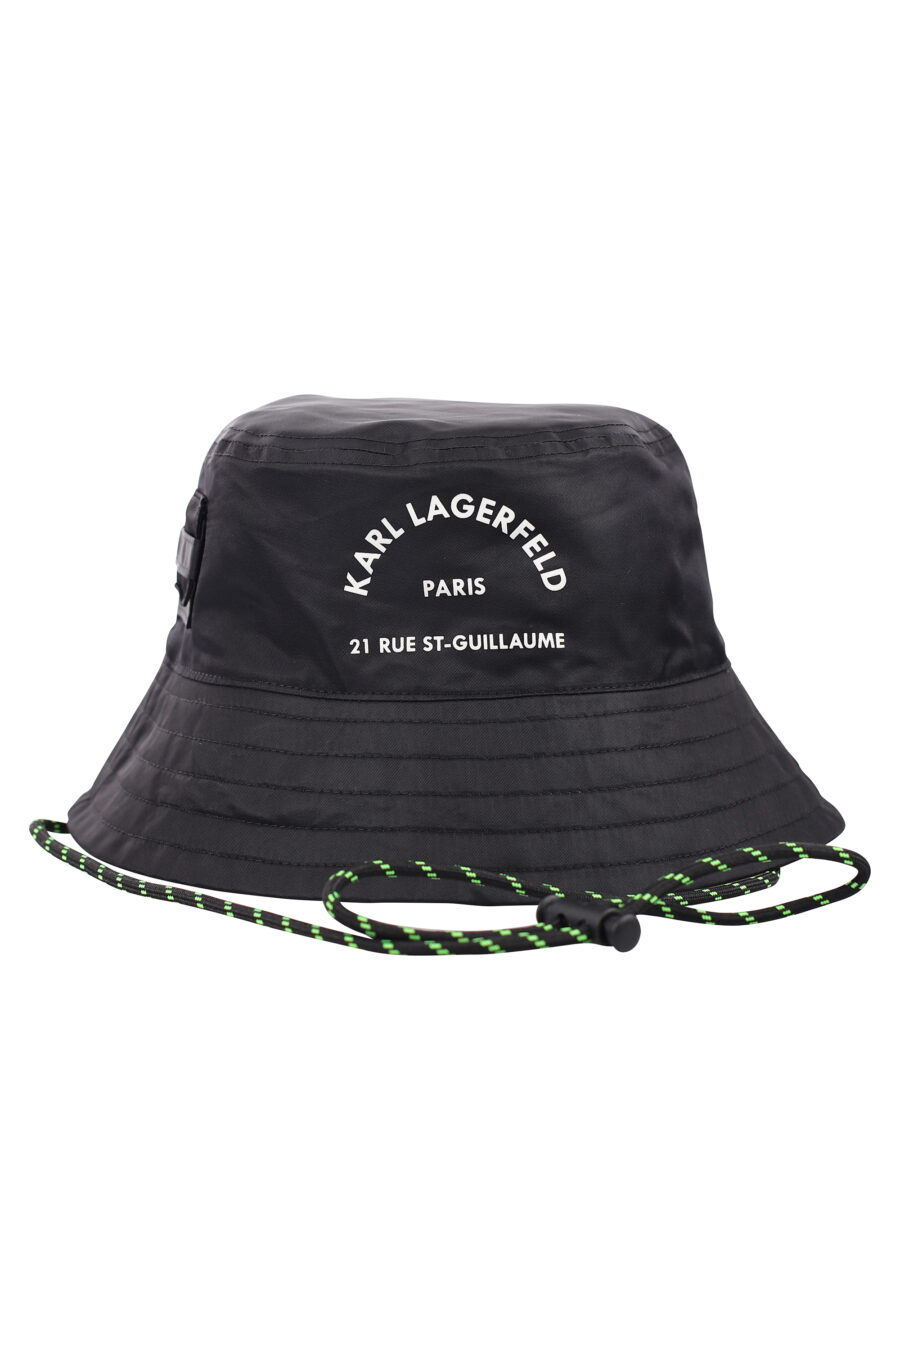 Sombrero de pescador negro reversible con logo "rue st-guillaume" - IMG 1849